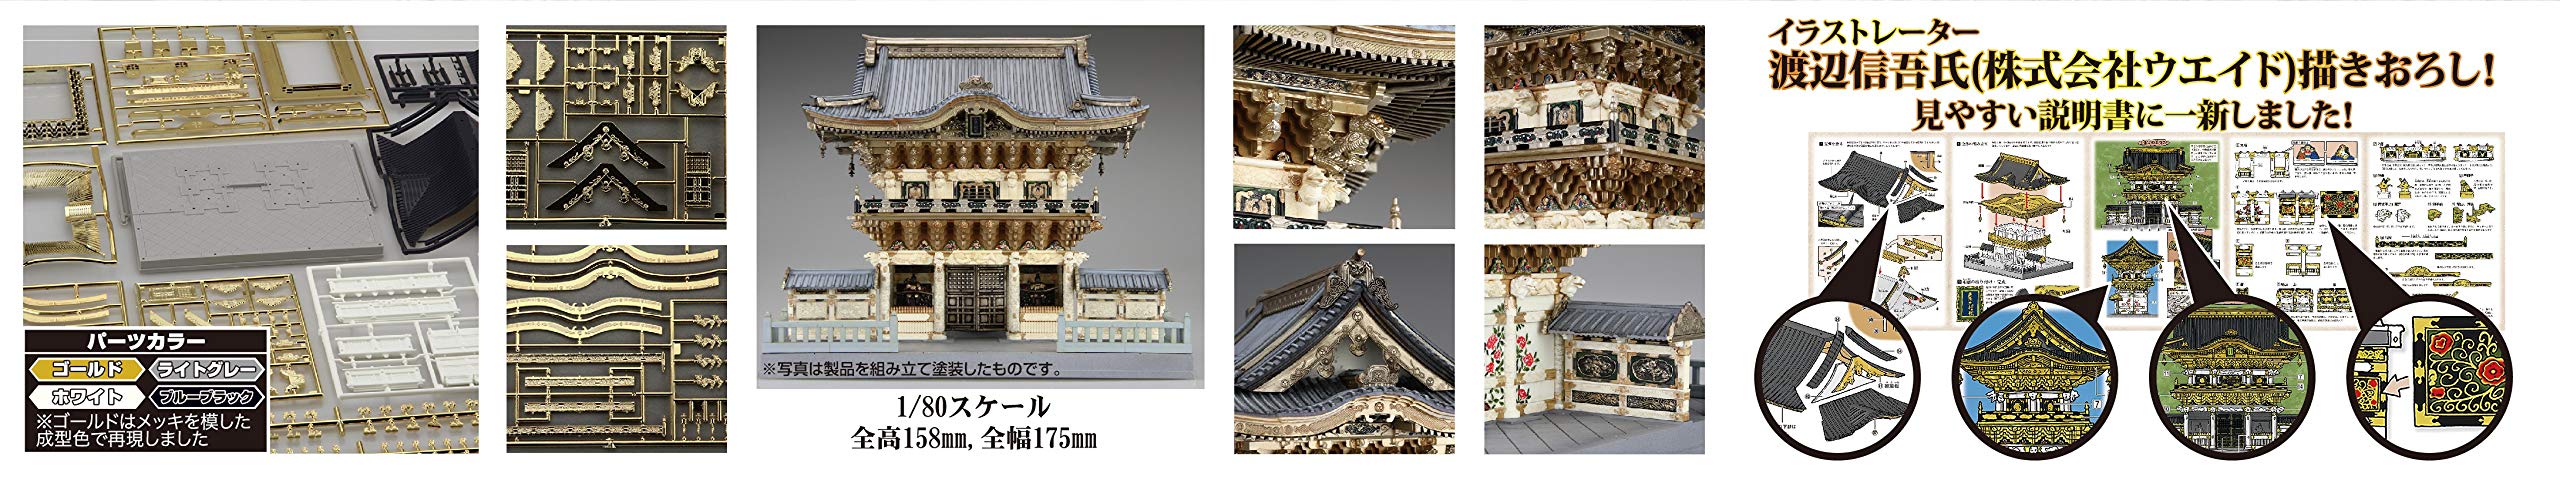 FUJIMI 500928 Building Series No.28 Sanctuaire Youmeimon